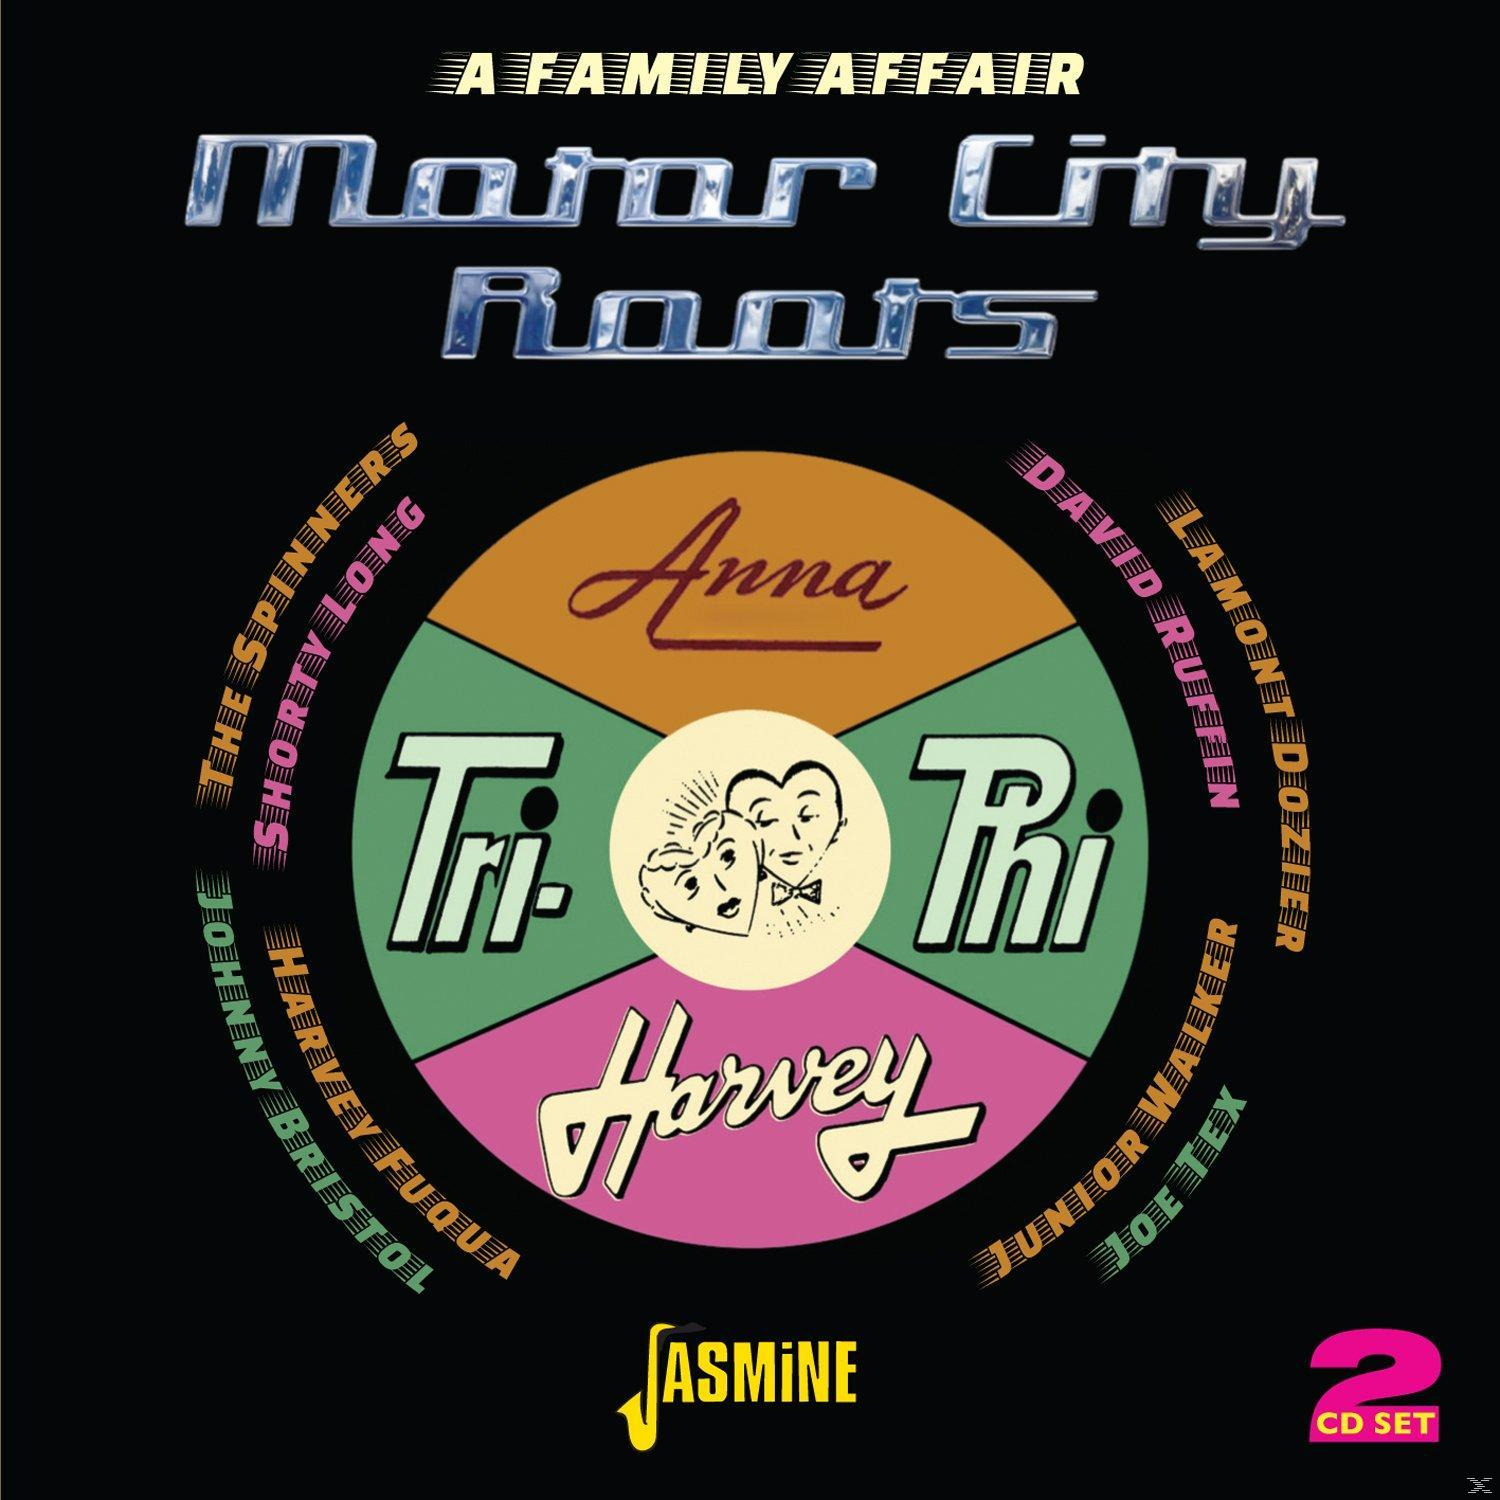 VARIOUS - City A Affair Motor (CD) - - Family